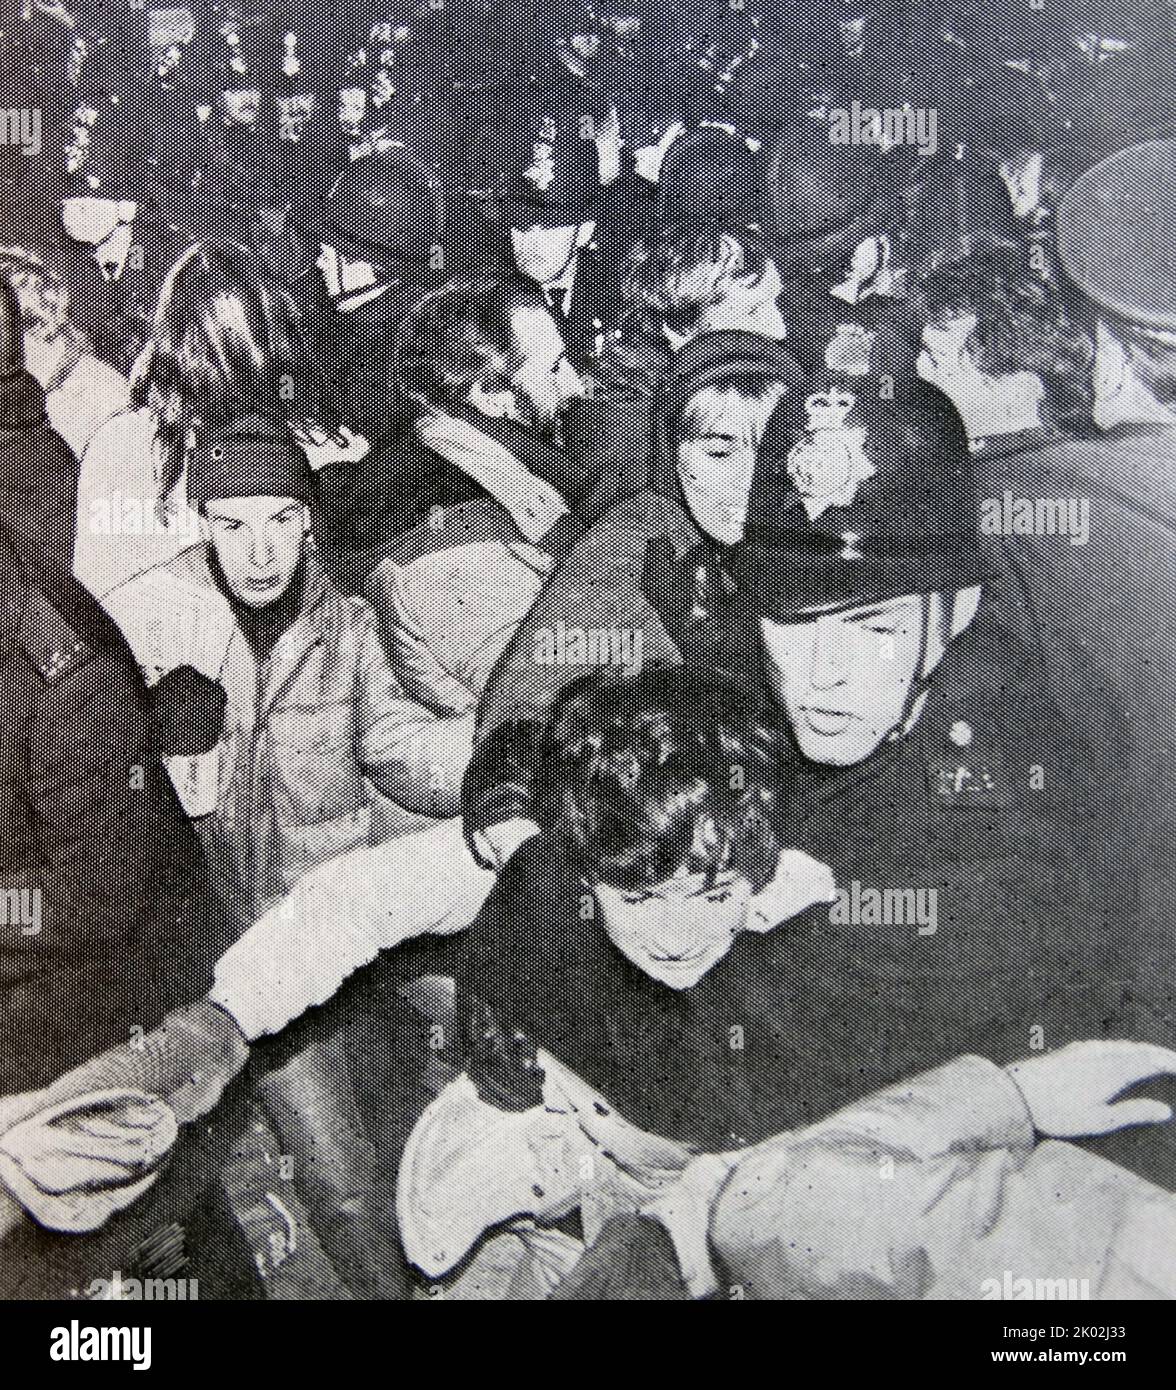 La police dispersa les partisans anglais de la paix dans une base de l'US Air Force à Greenham Common. Angleterre 1984 Banque D'Images